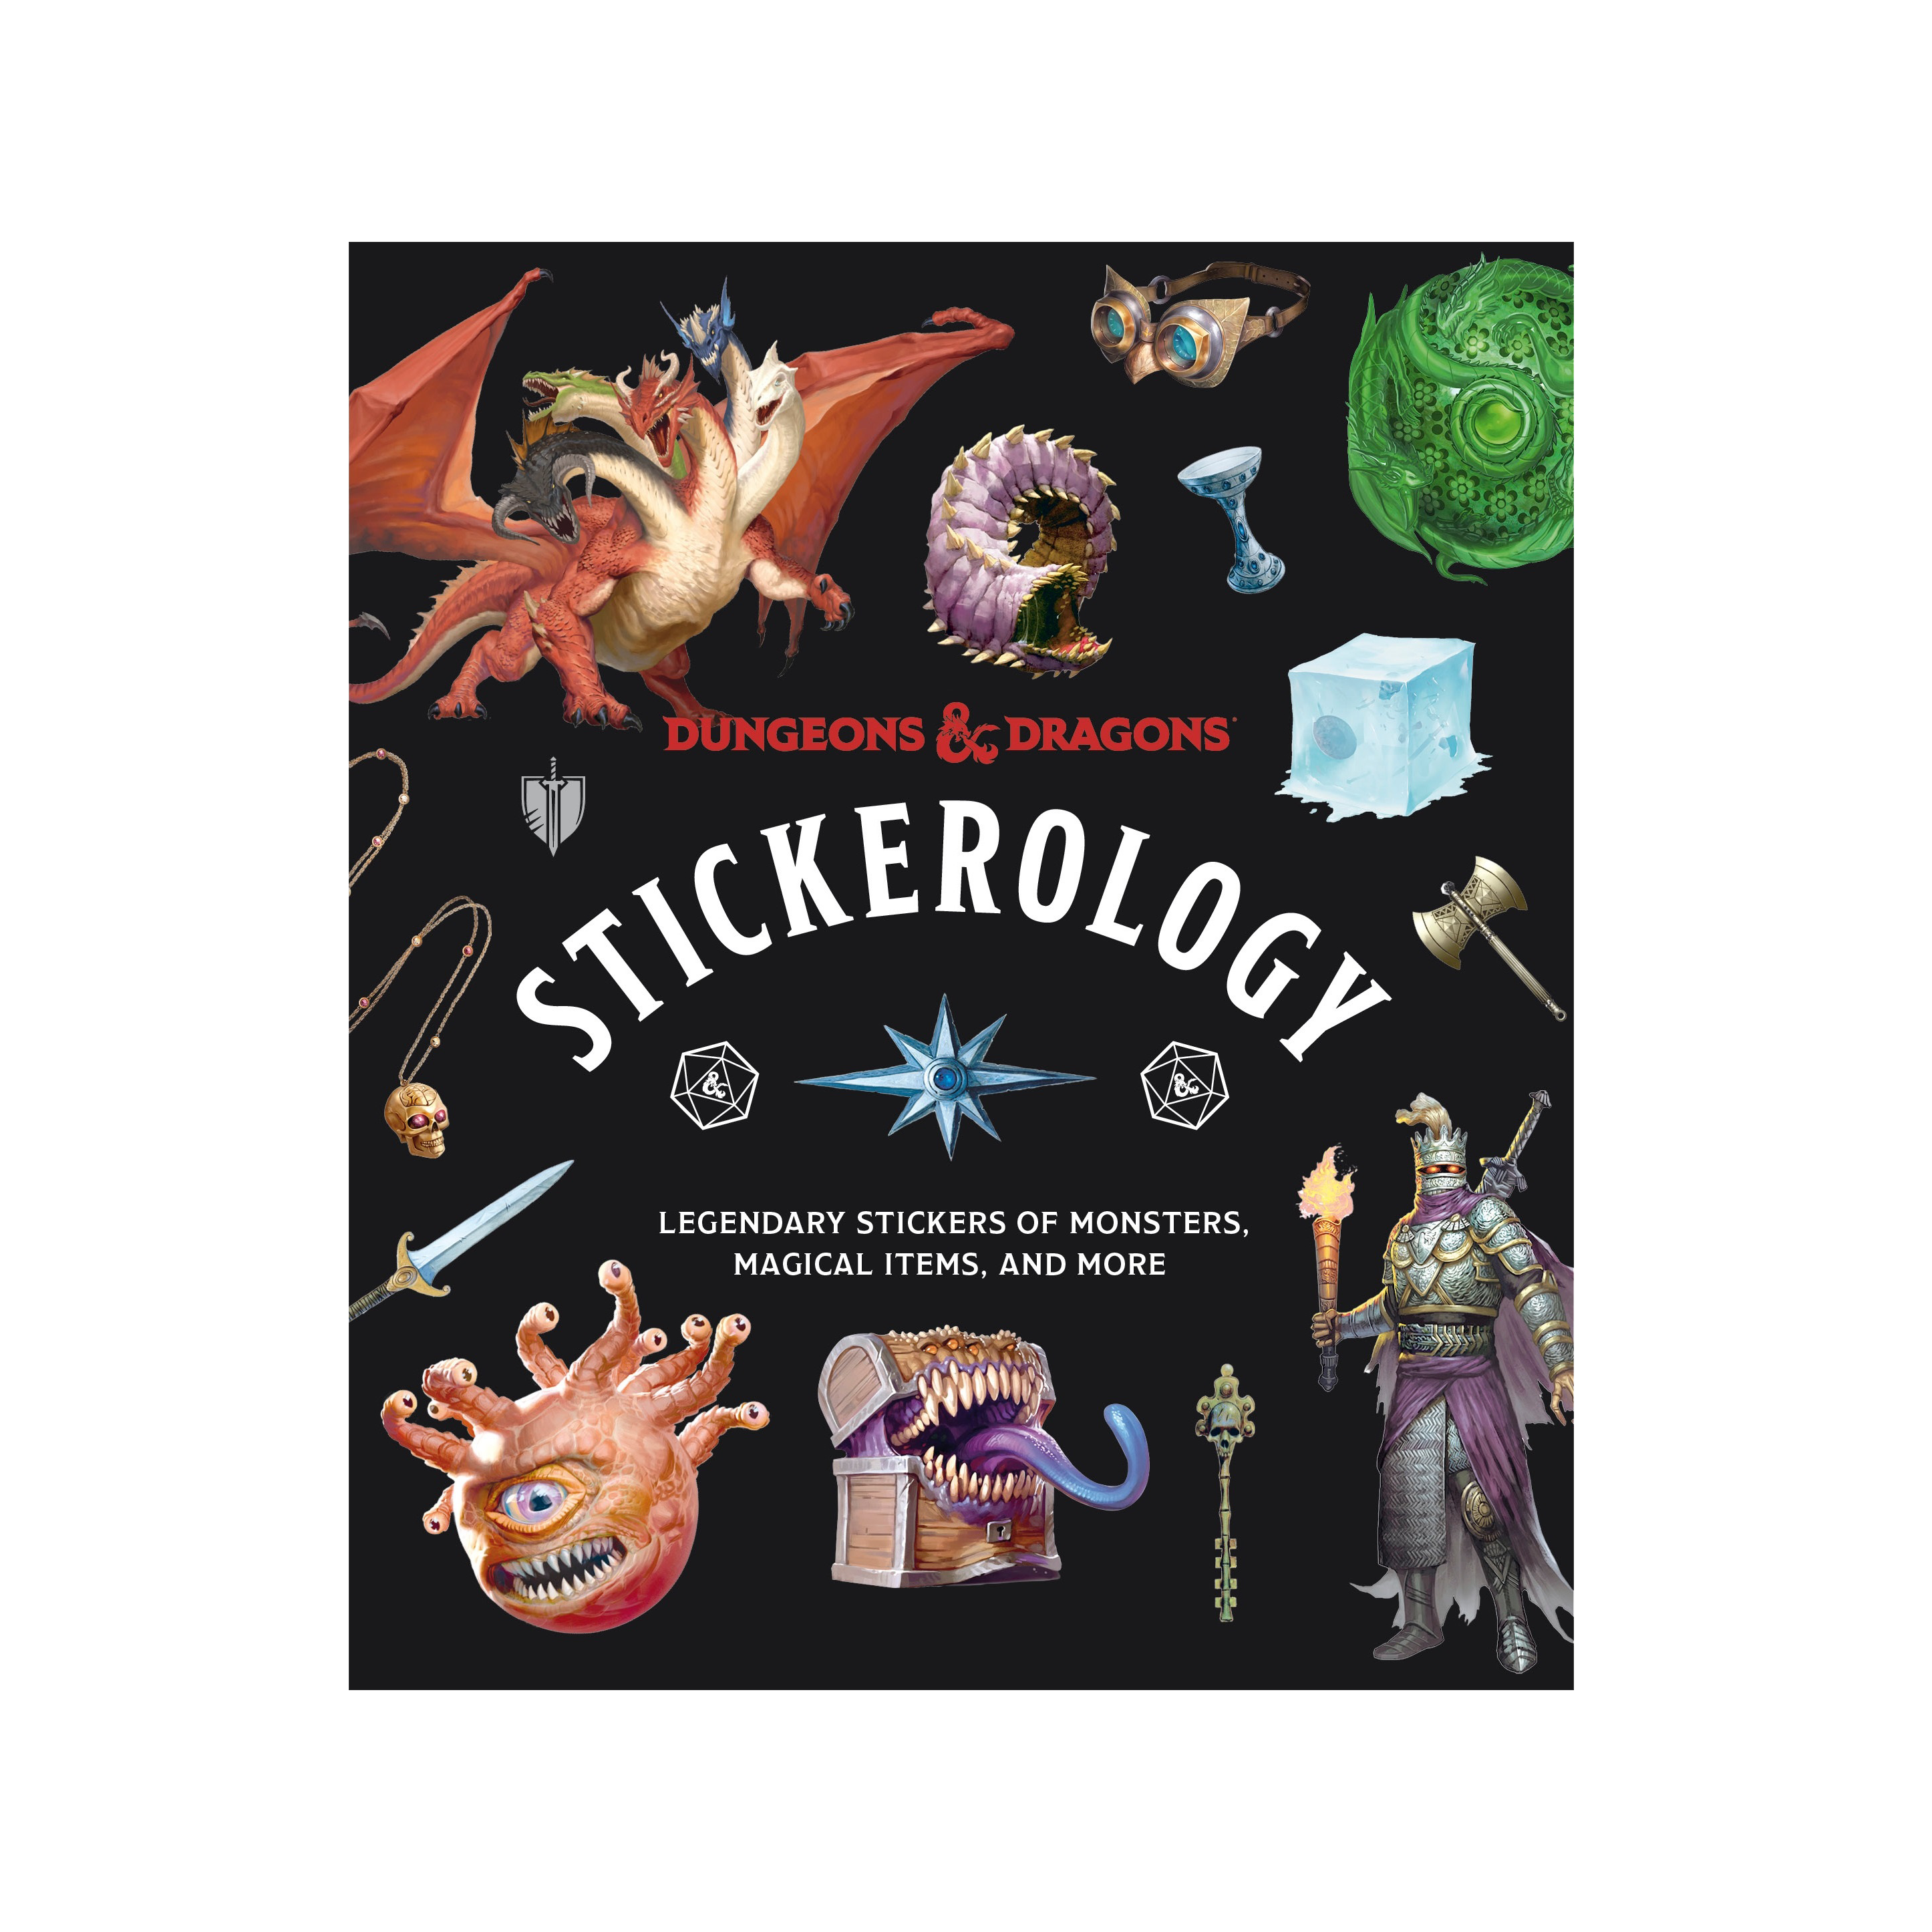 Dungeons & Dragons: Stickerology